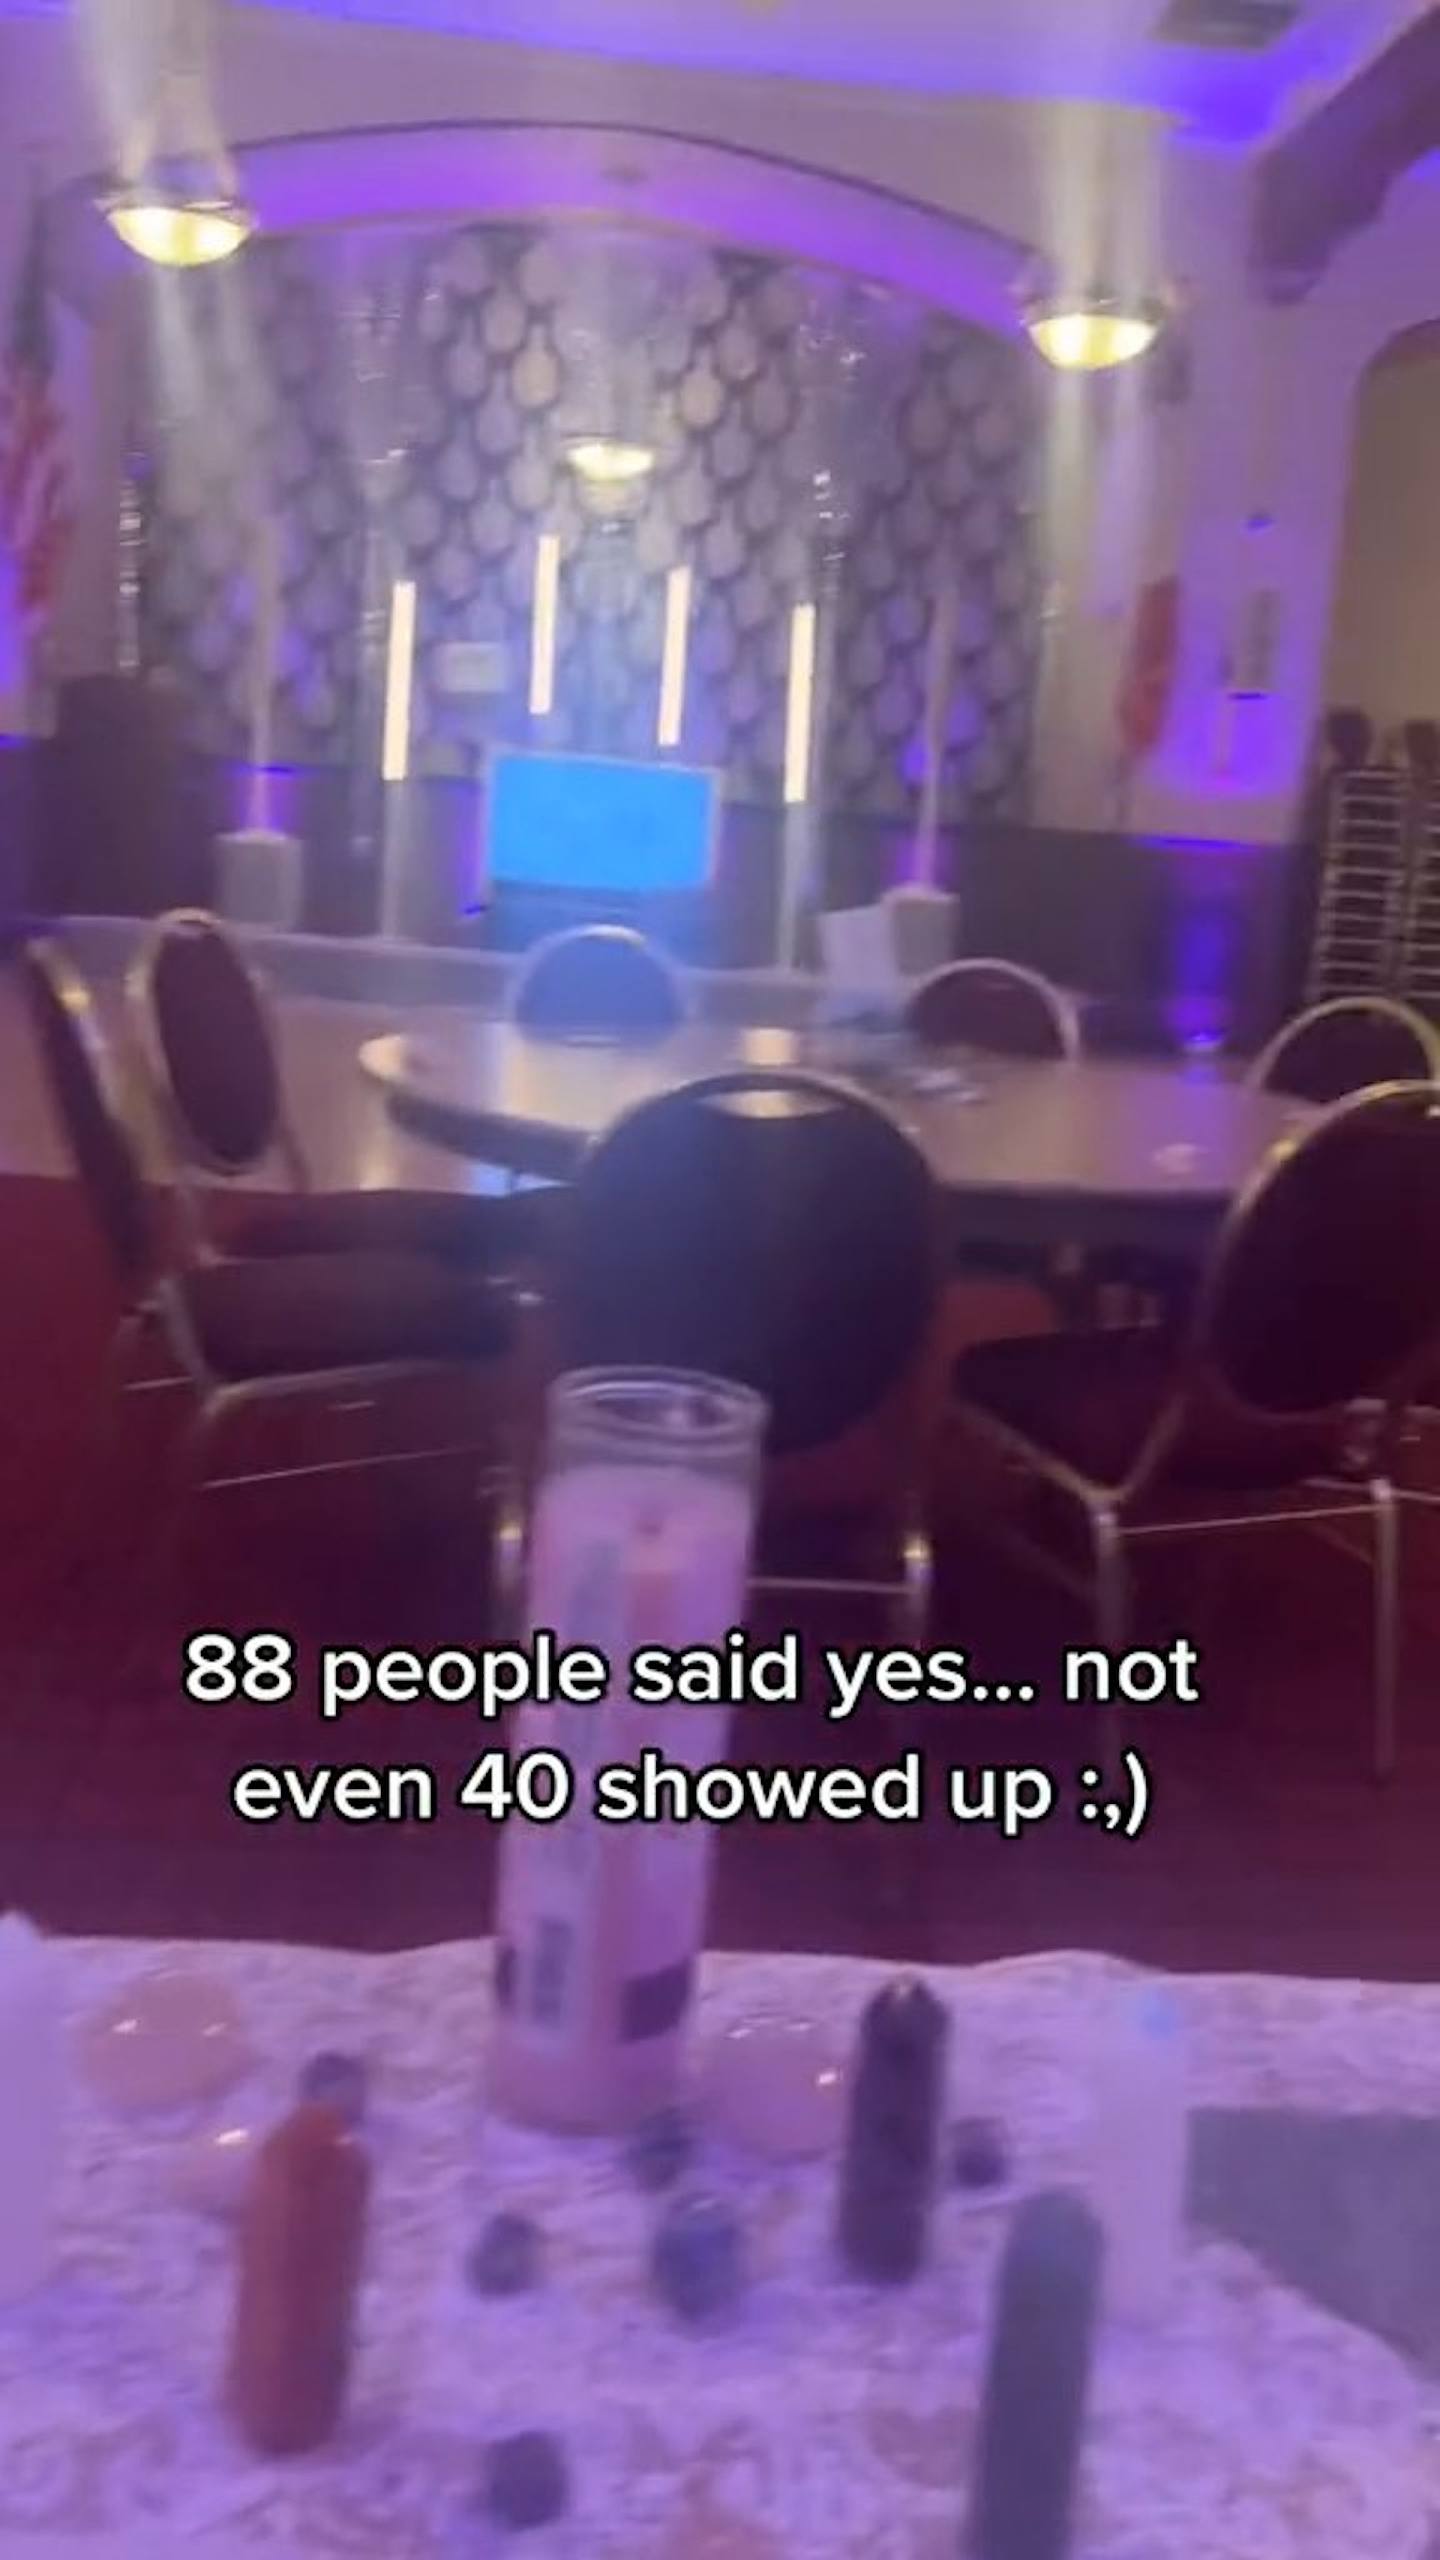 從格雷上載到TikTok的多段影片見到，婚禮現場相當冷清，多張宴桌都沒有賓客。（影片截圖）